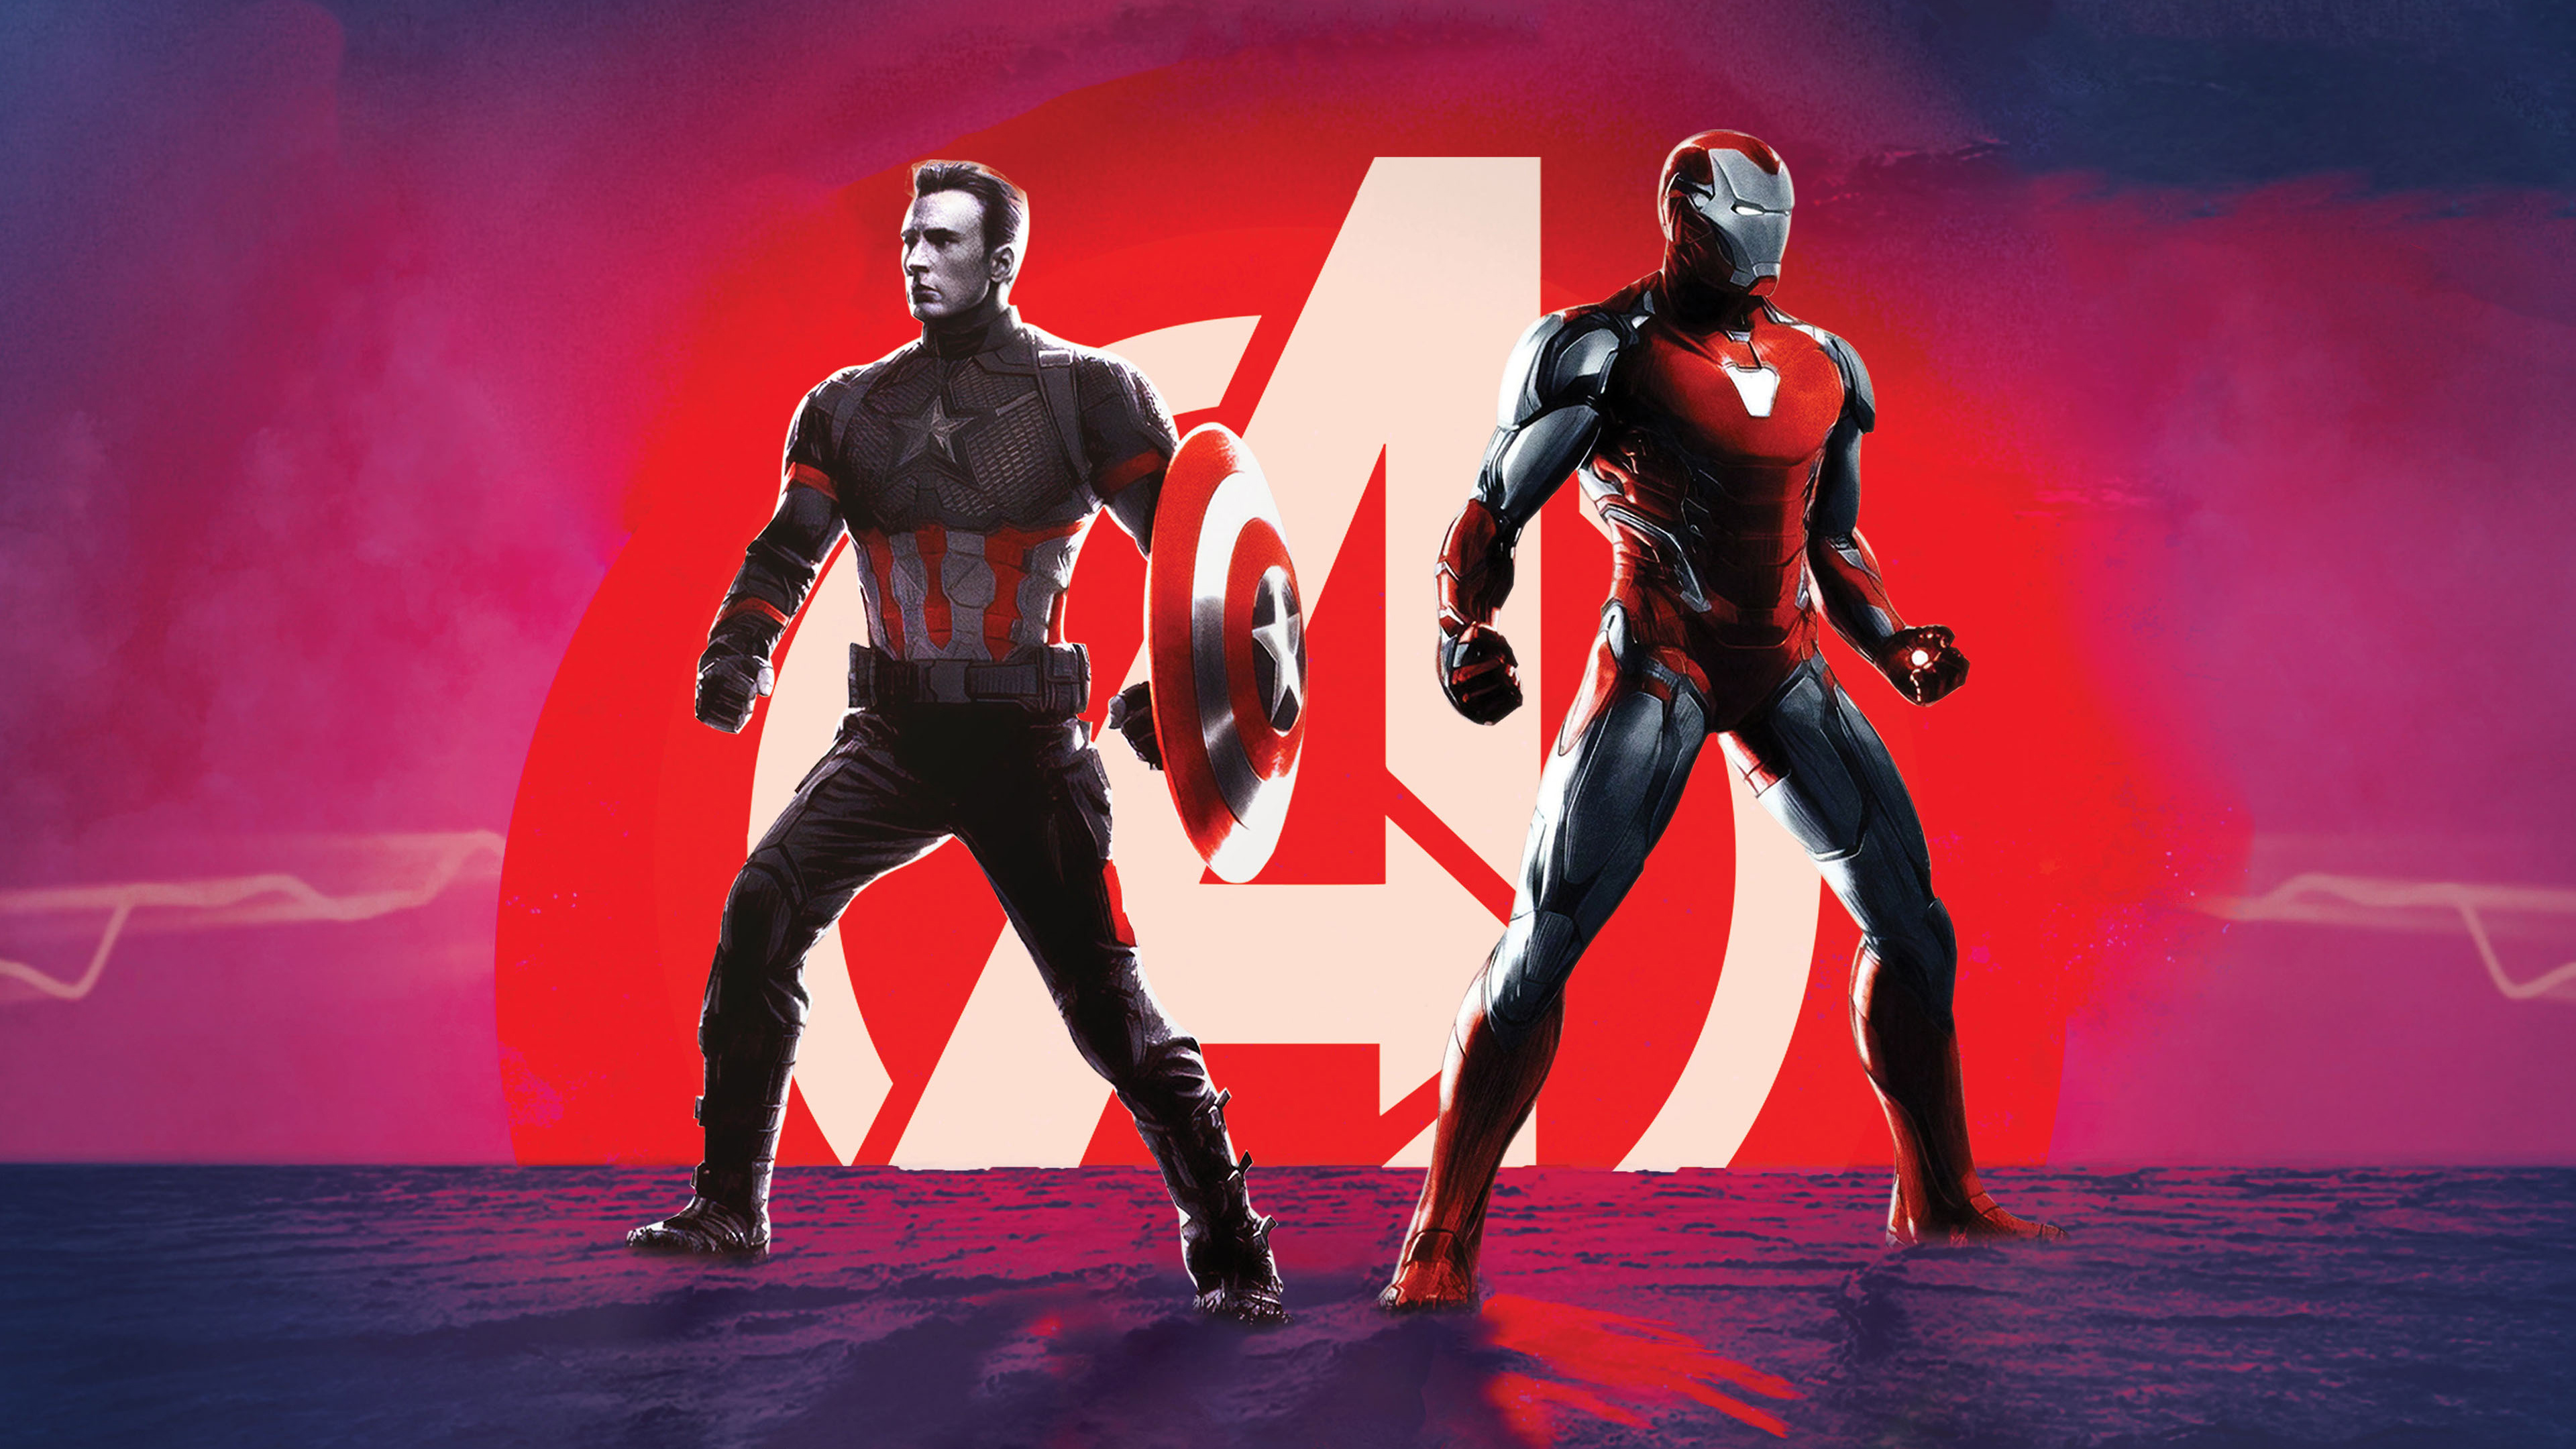 Captain America Iron Man in Avengers Endgame 4K Wallpapers